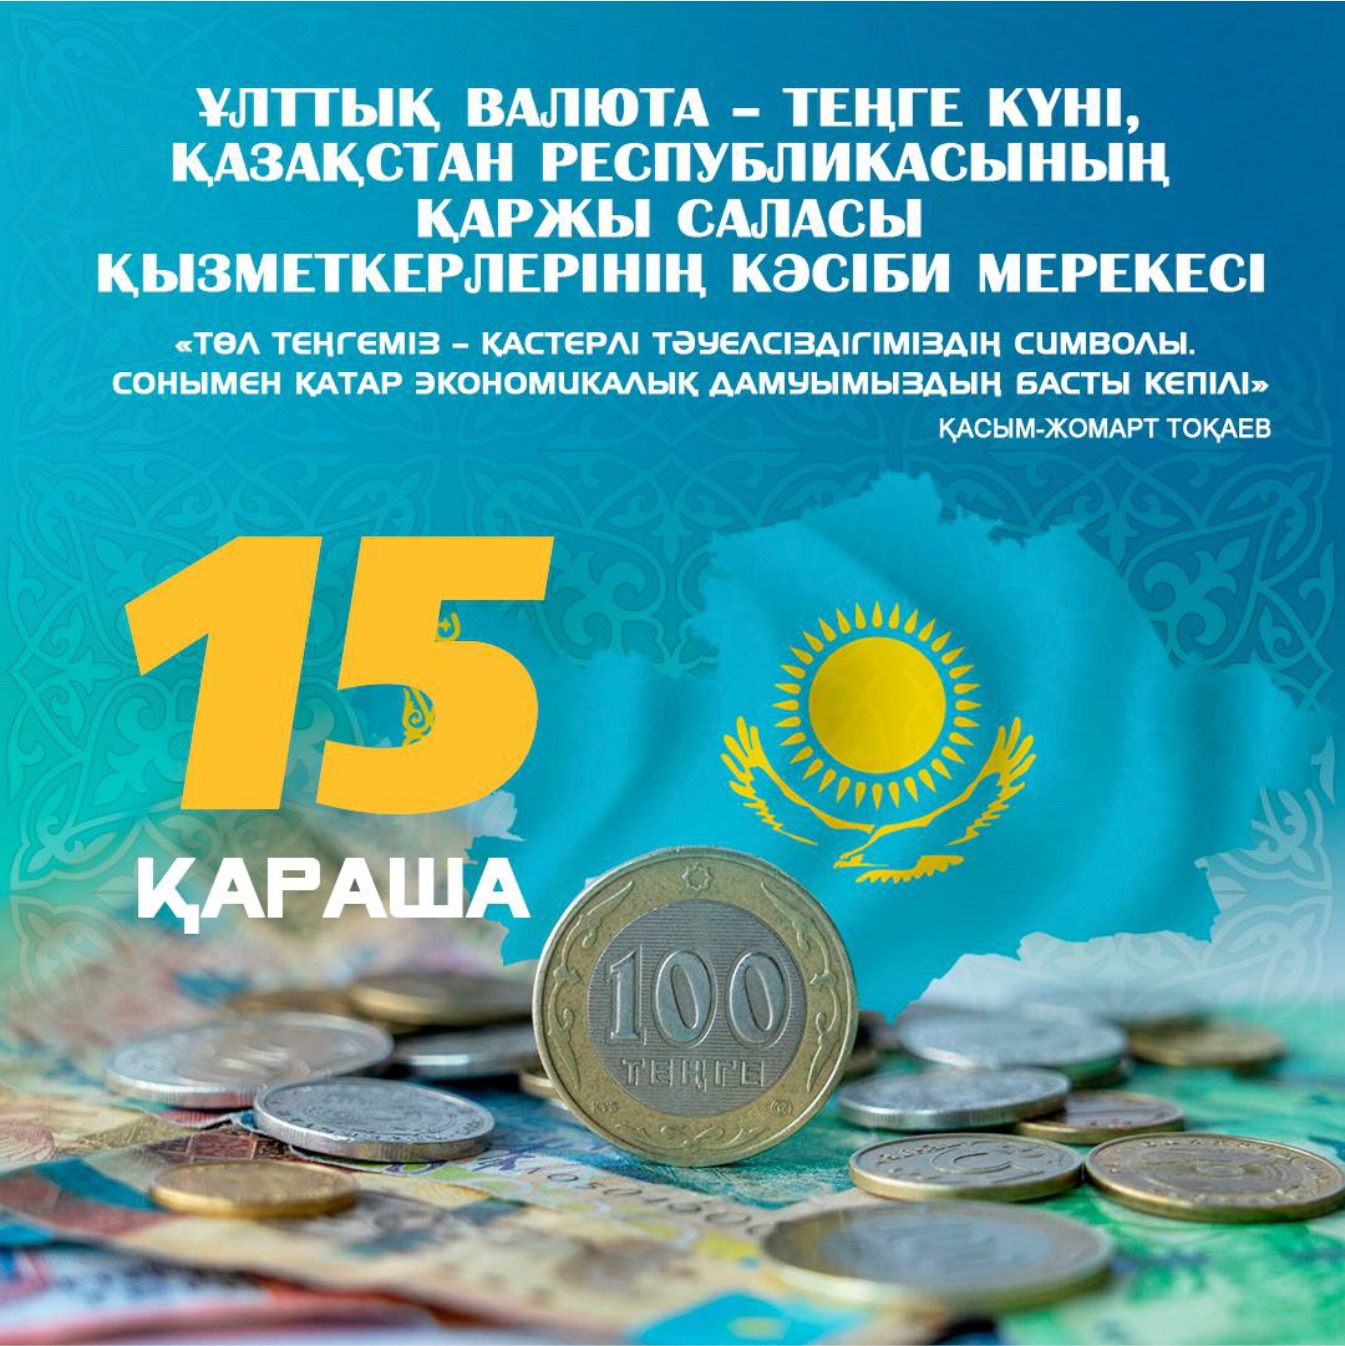 15 ноября день национальной валюты - тенге, профессиональный праздник работников финансовый системы Республики Казахстан